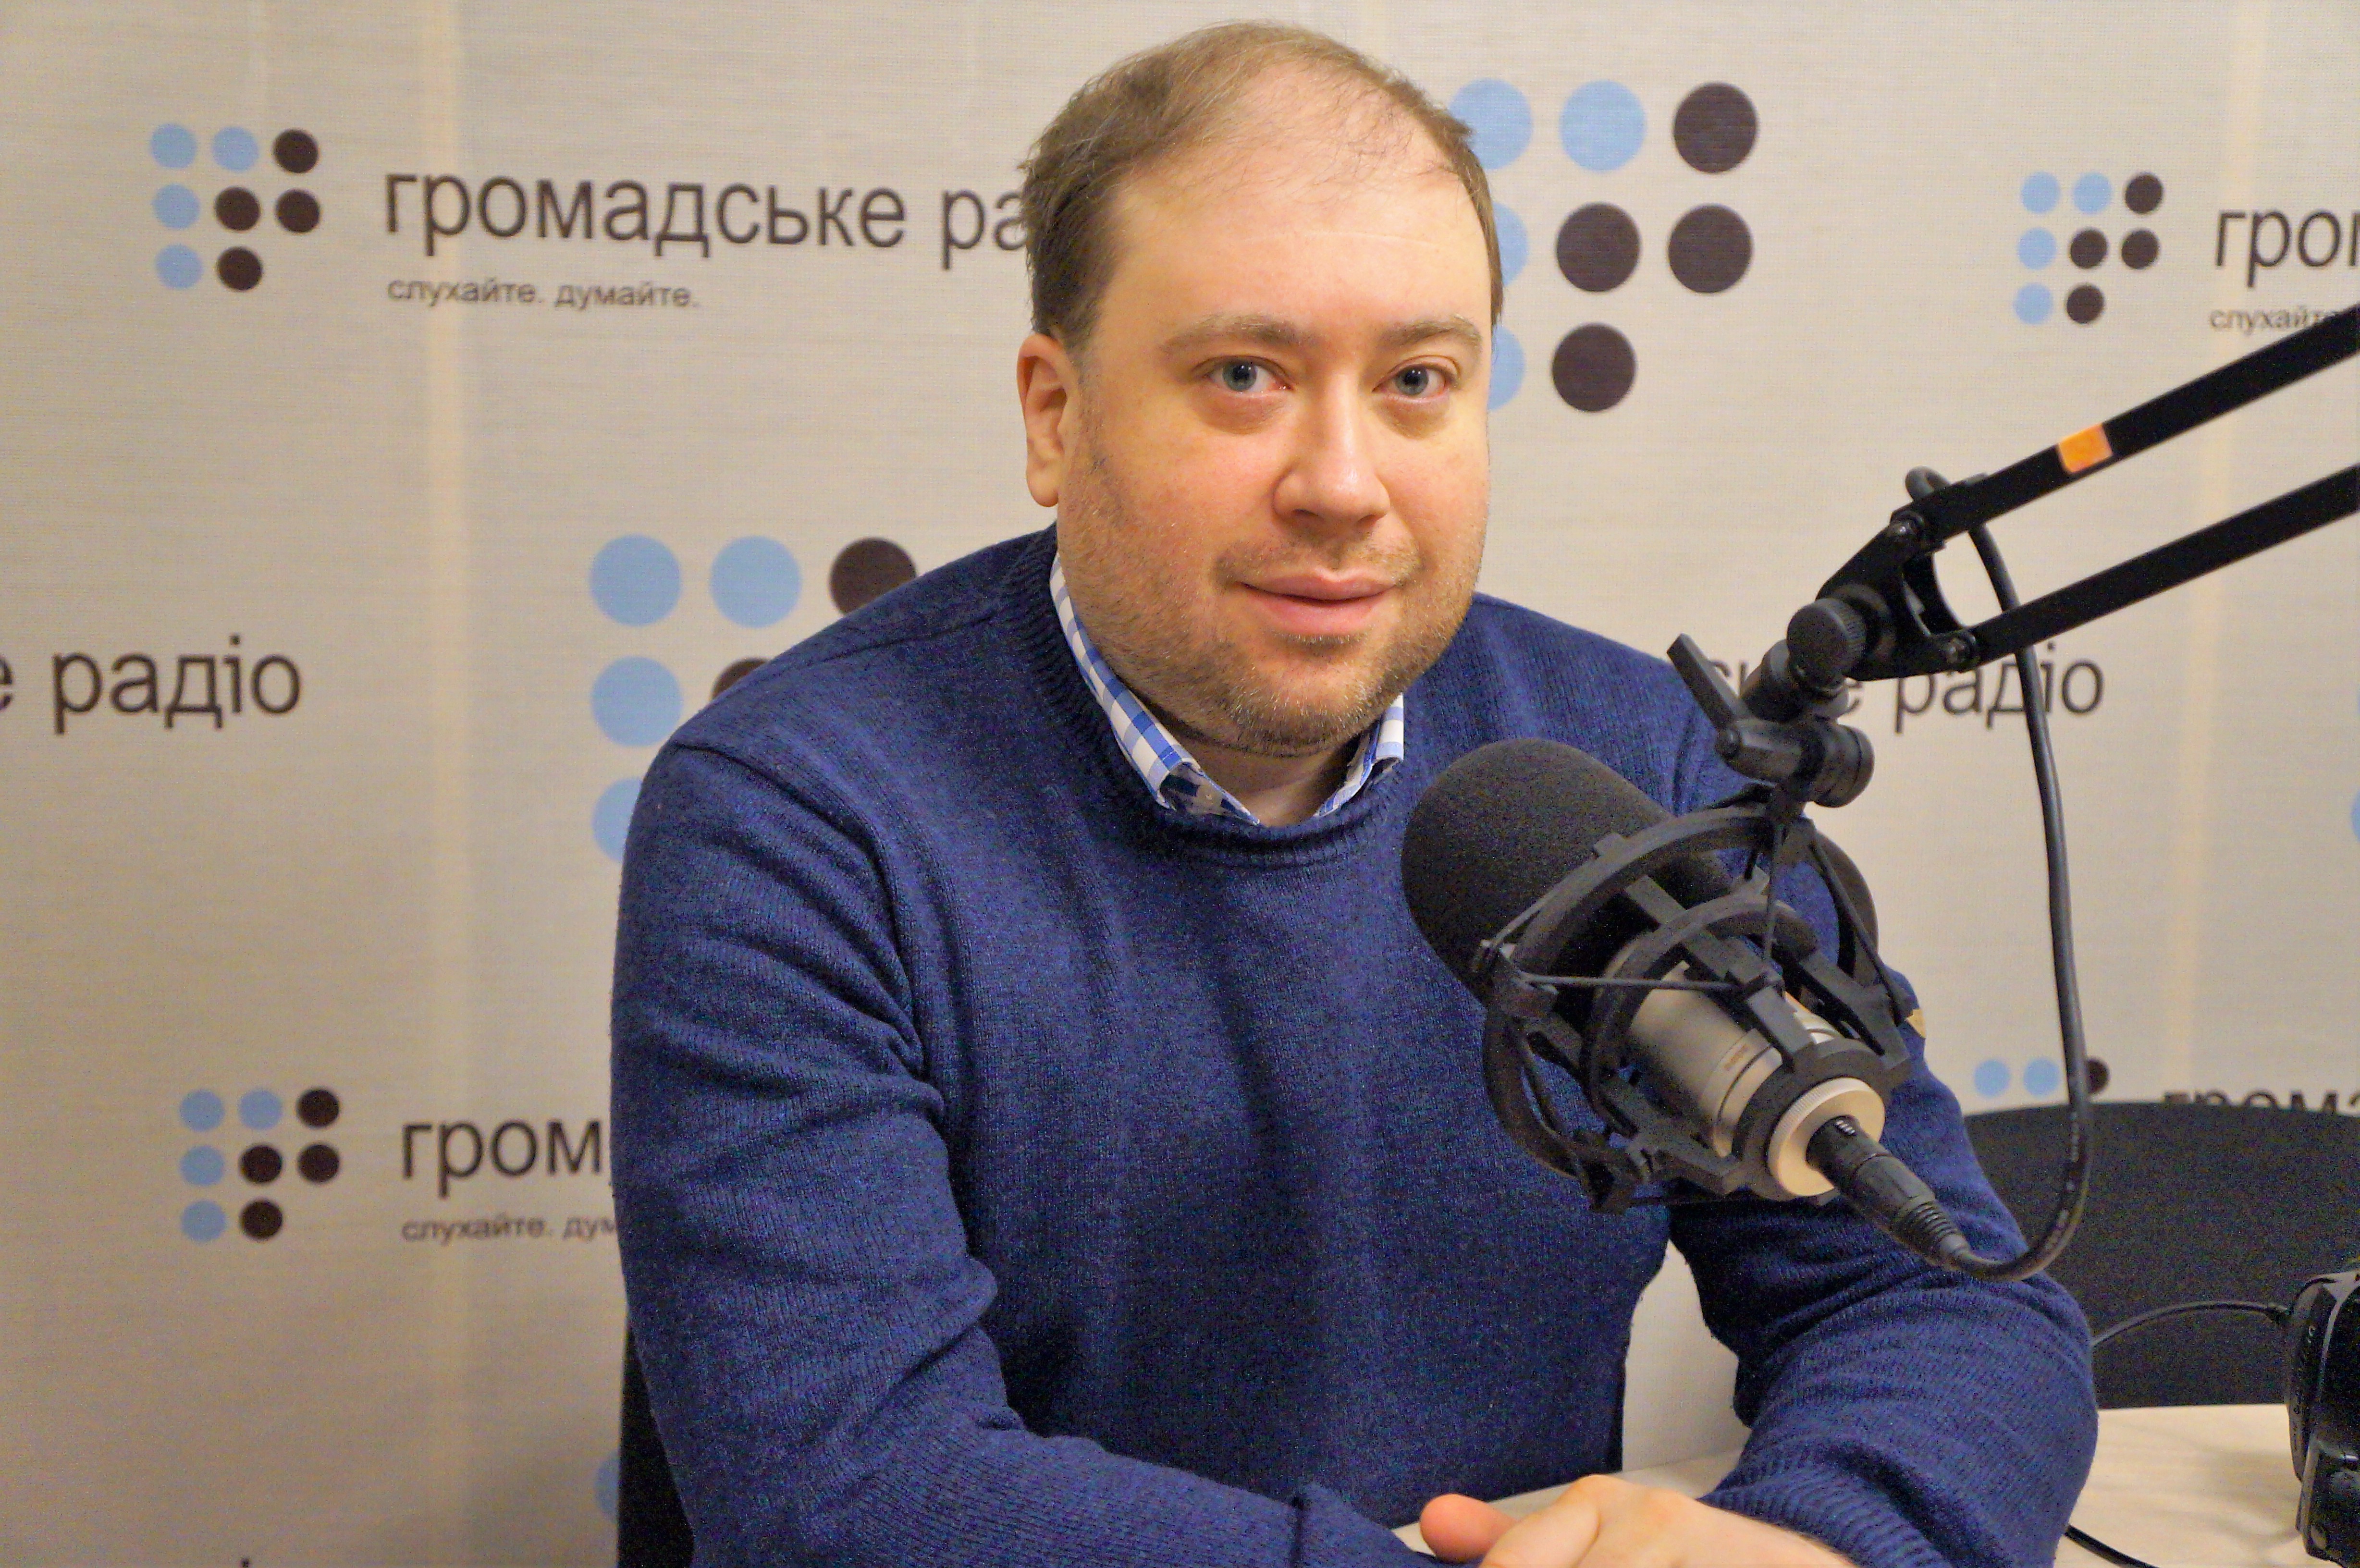 Путін — імпульсивний, він ухвалює рішення в останній момент — політолог про ситуацію на Донбасі